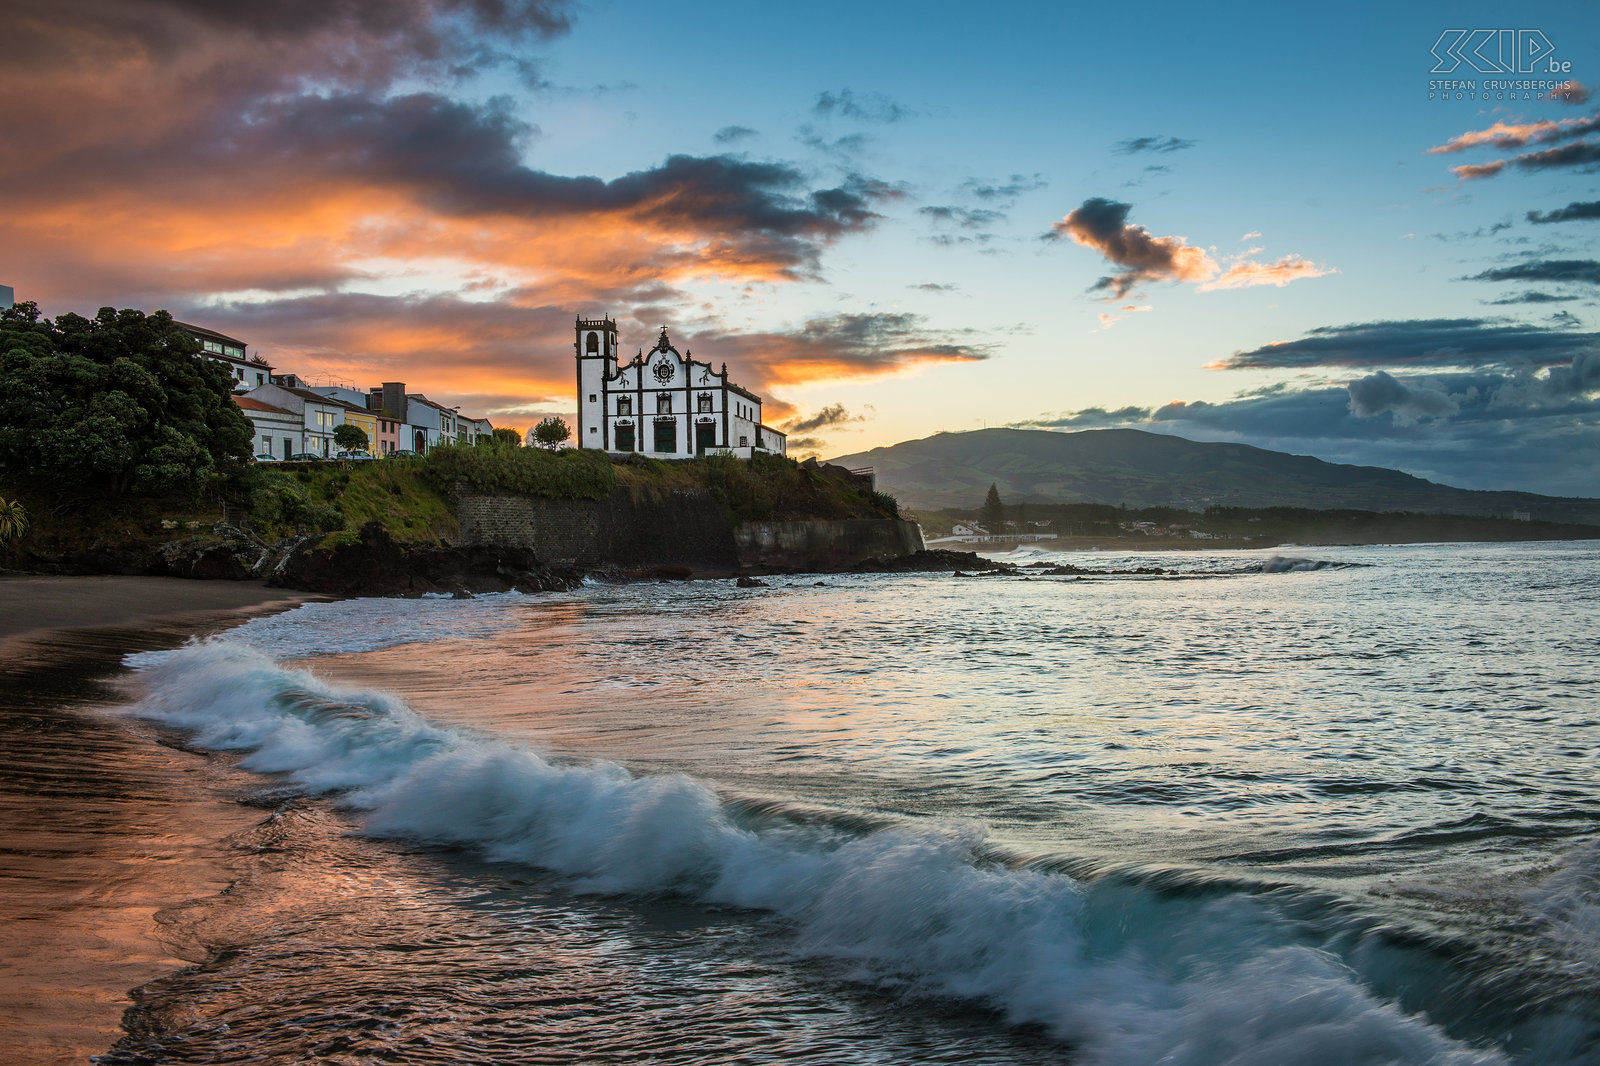 Zonsopgang Sao Roque Een prachtige zonsopgang op het zwarte zandstrand van São Roque met op de achtergrond kerk. São Roque is een deelgemeente van Ponta Delgada, de administratieve hoofdstad van de Azoren. De prachtige witte kerk (ingreja) van São Roque ligt hoog boven de oceaan tussen 2 stranden. Stefan Cruysberghs